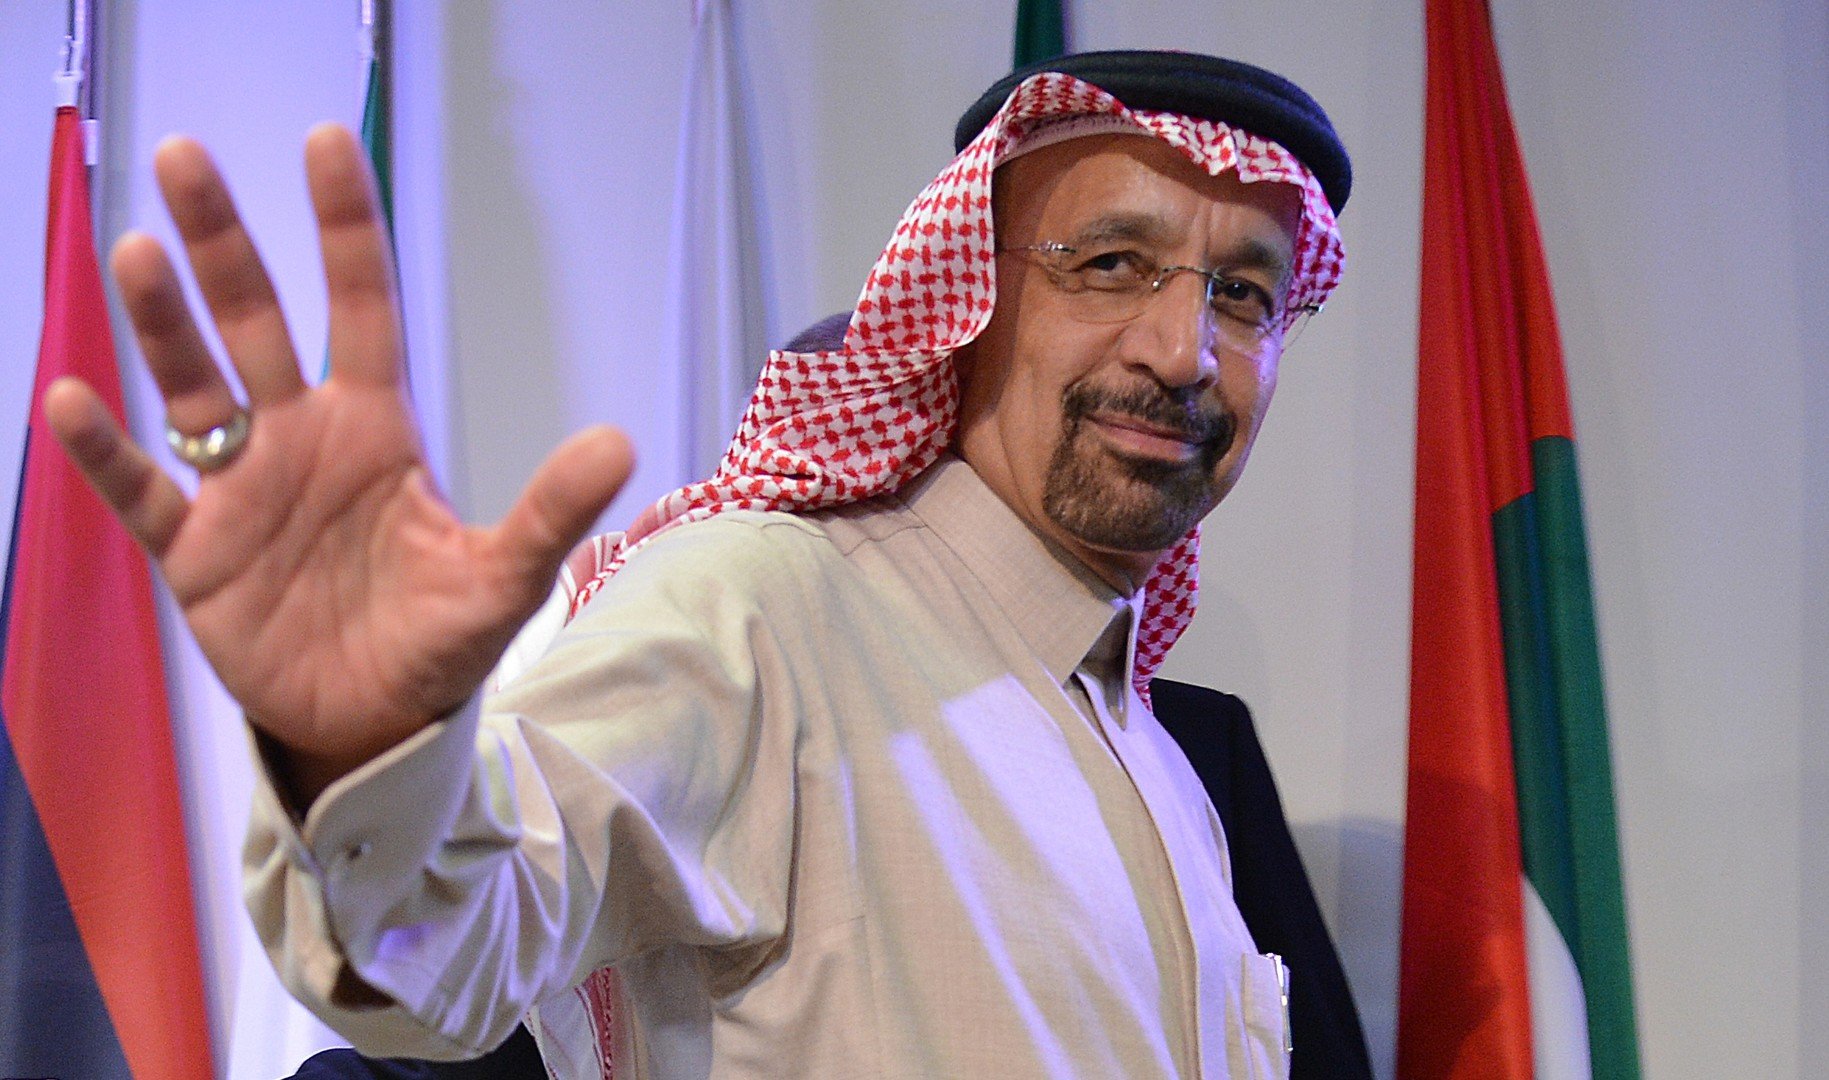 Халидом аль саудом. Халид Аль Фалих. Халид Абдульазиз Аль-Фалих. Министр энергетики Саудовской Аравии. Фестиваль в Саудовской Аравии.